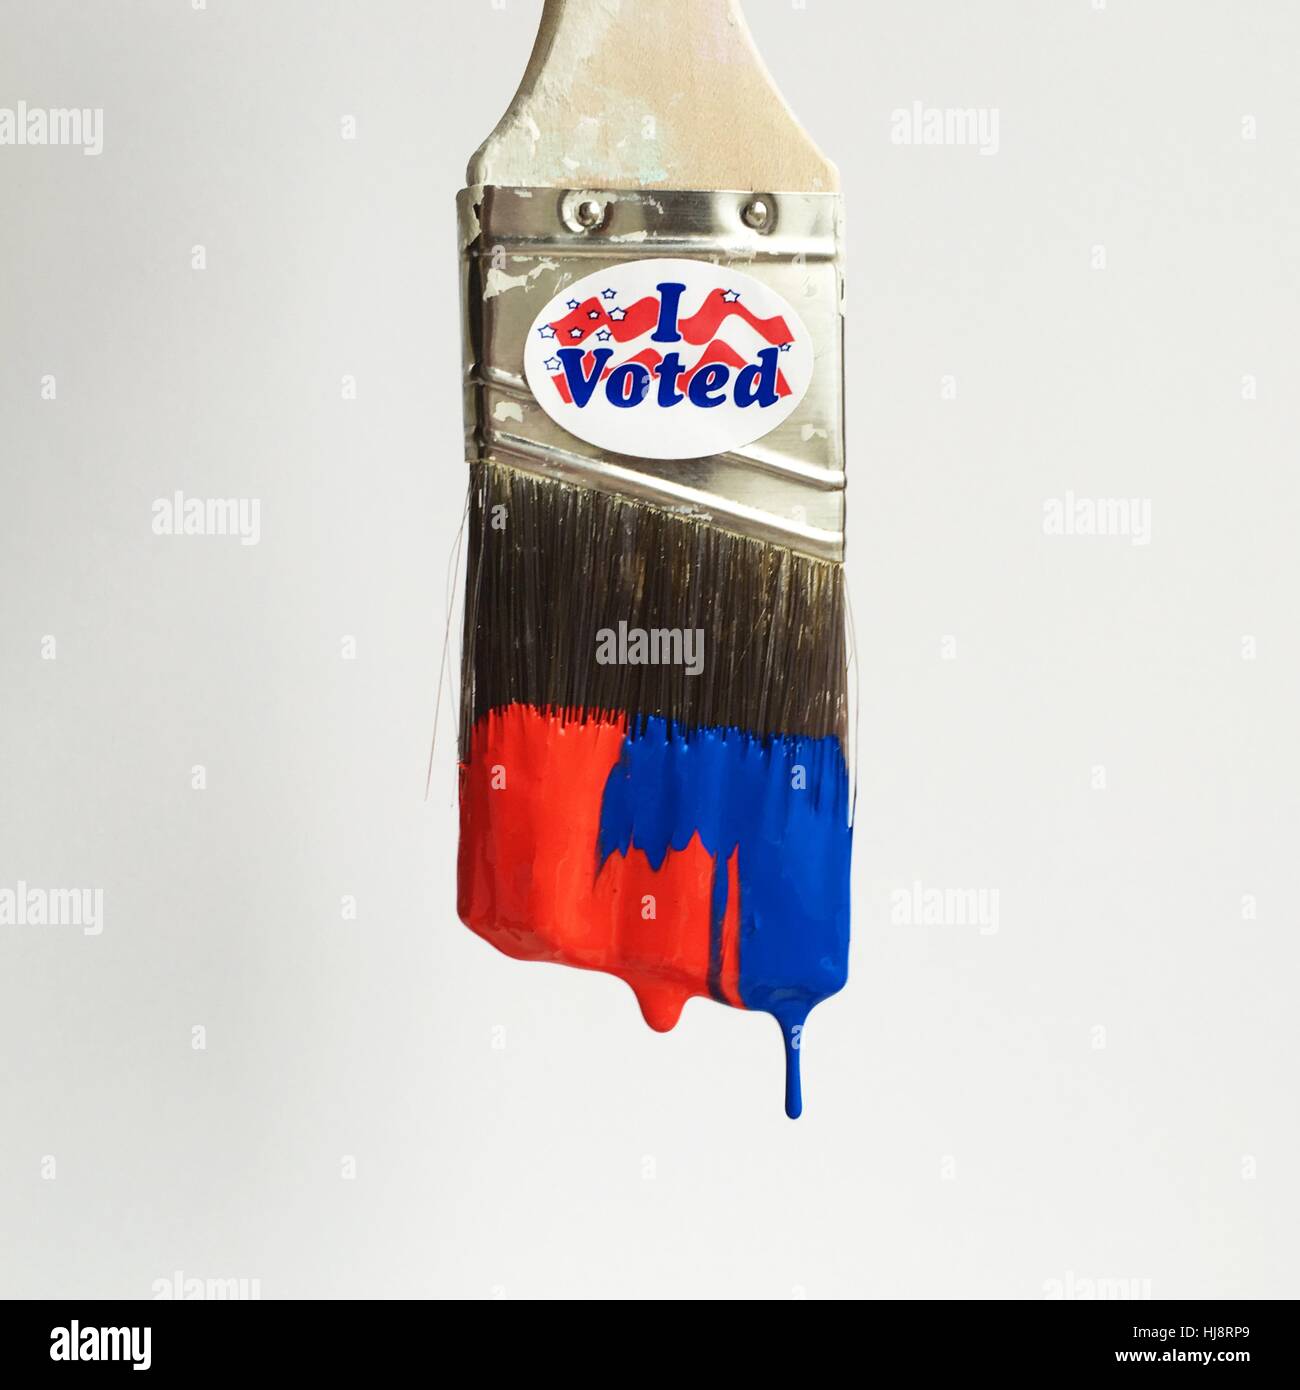 I voted label on paint brush Stock Photo